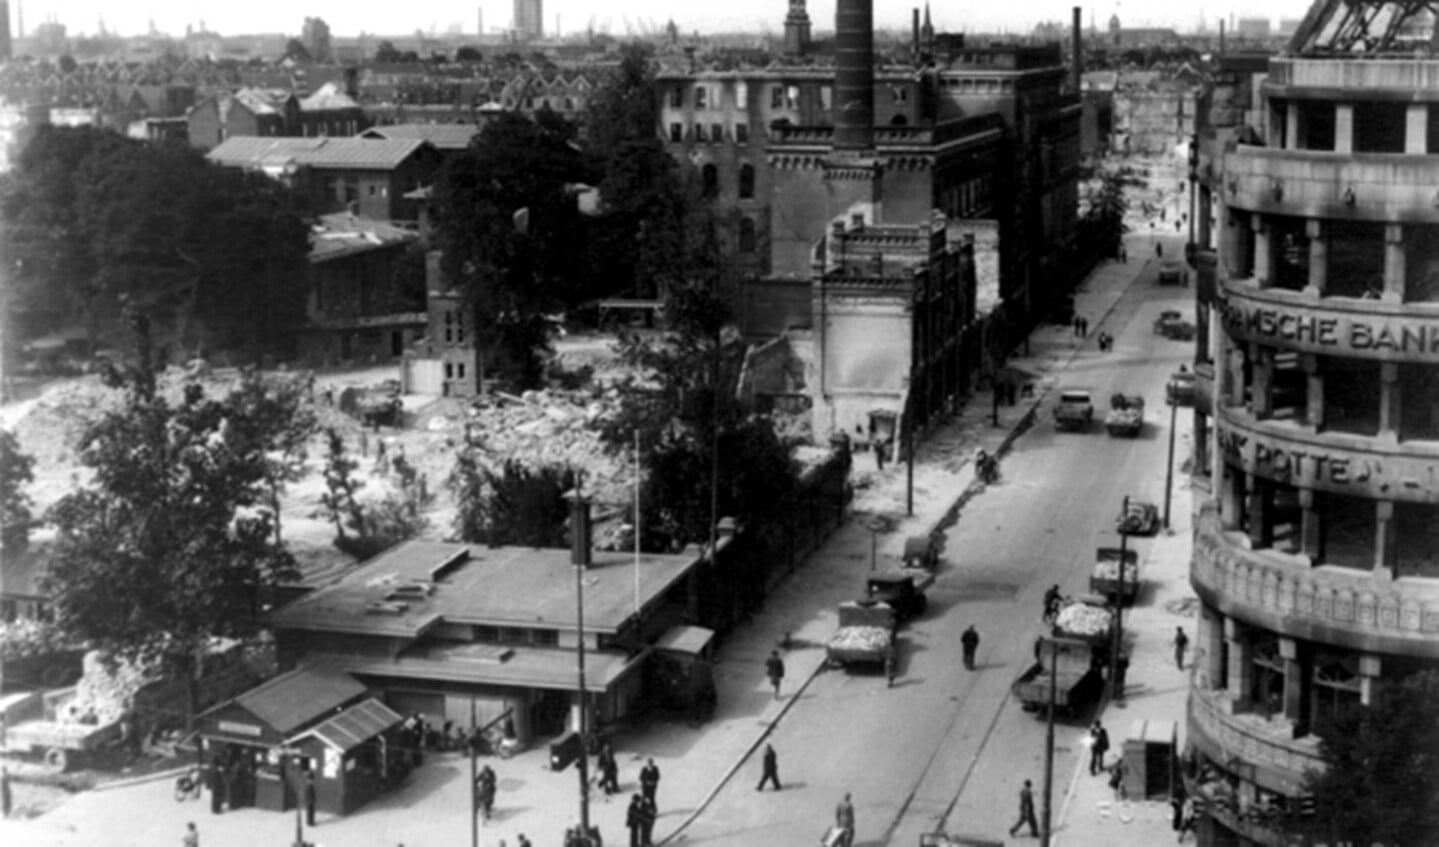 Luchtopname van de Van Oldenbarneveltstraat met het verwoeste gemeente ziekenhuis, huizen en gebouwen als gevolg van het bombardement van 14 mei 1940. Op de voorgrond de Coolsingel ter hoogte van het KLM kantoorgebouwtje en de Amsterdamsche bank, uit het oosten gezien.